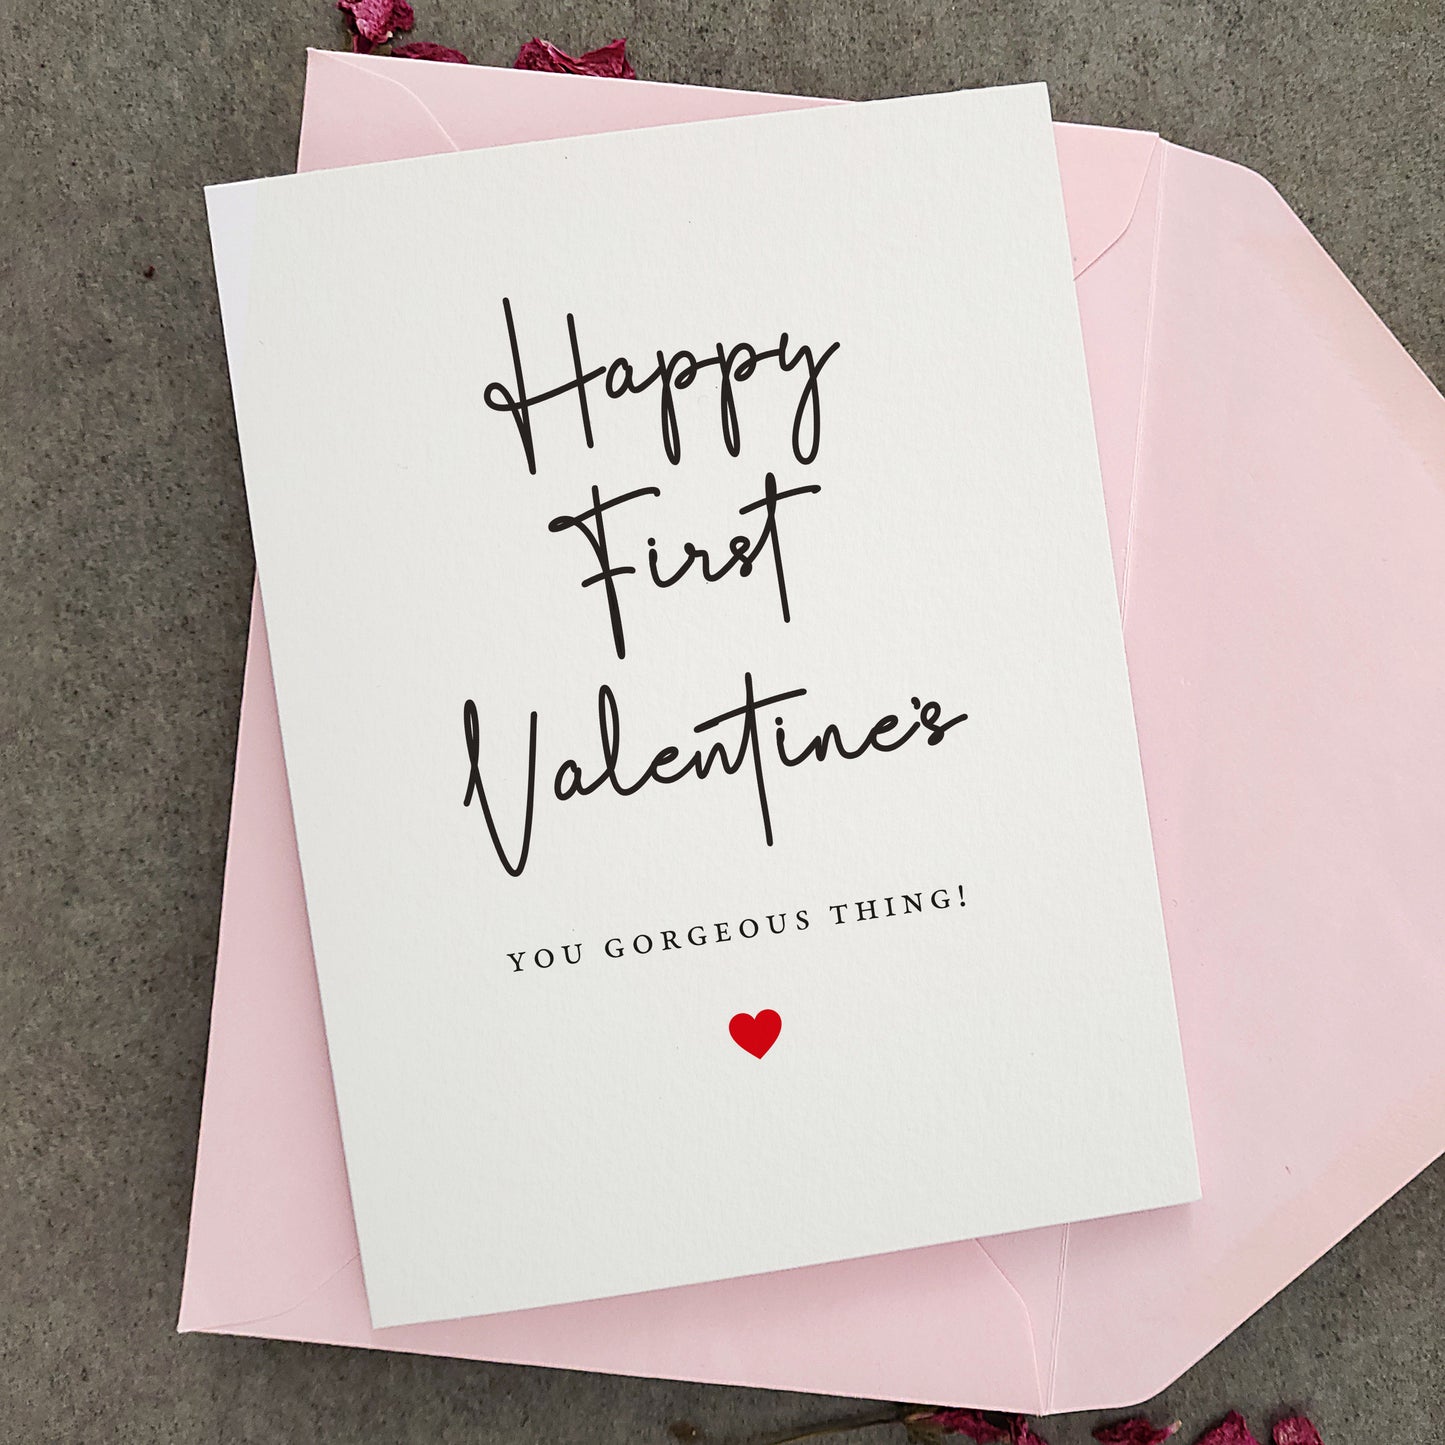 happy first valentines day card - XOXOKristen